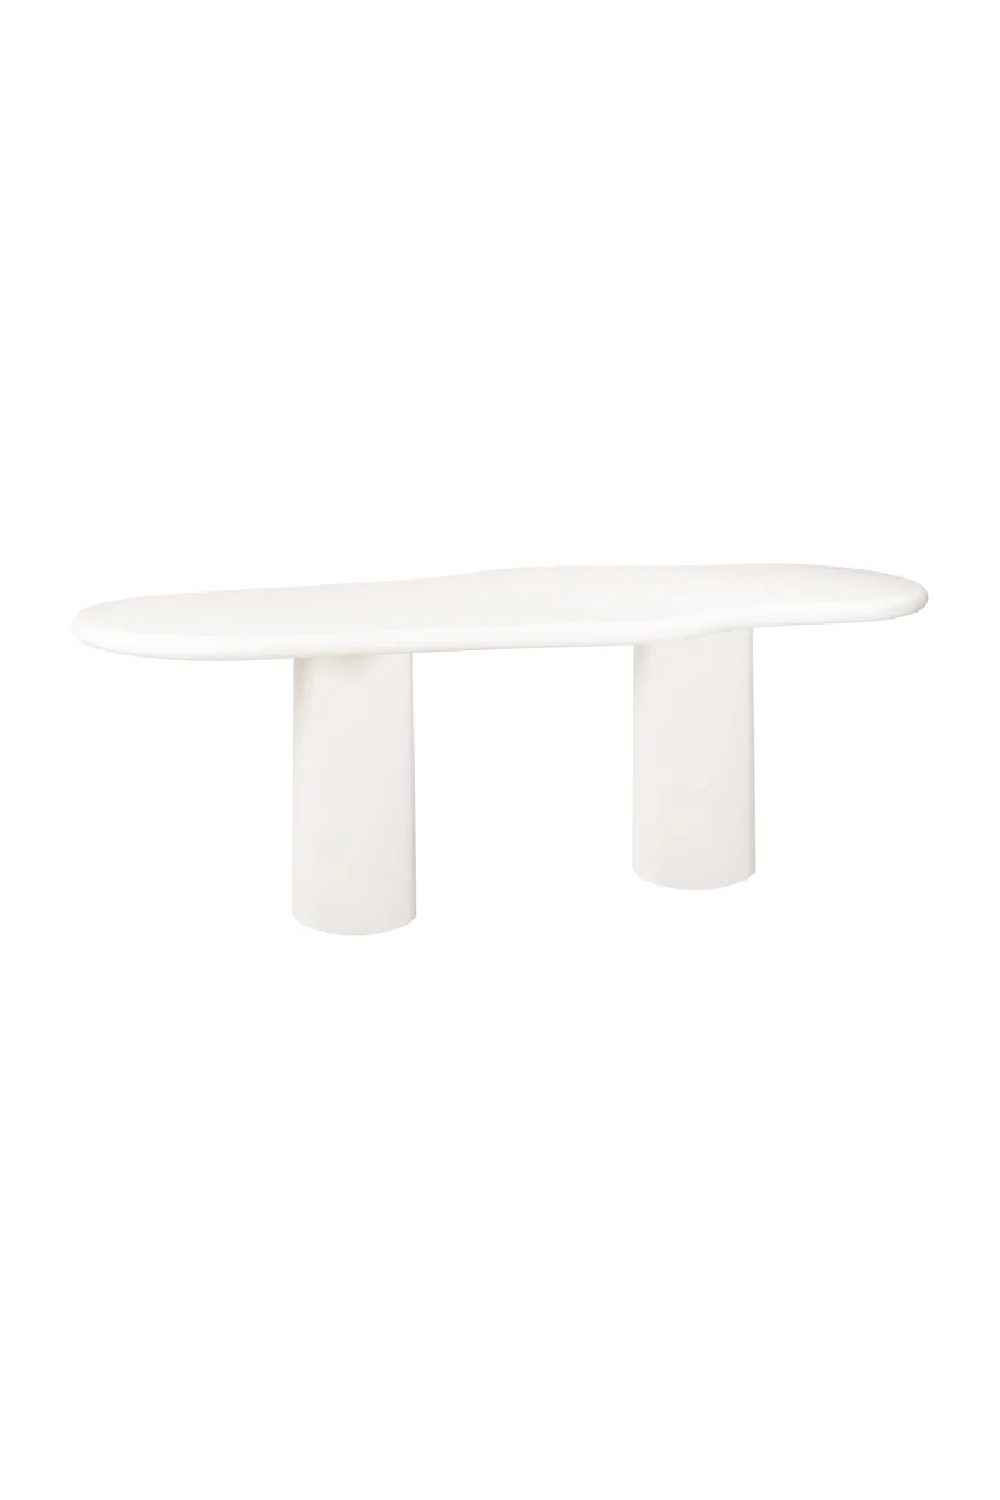 White Organic-Shaped Dining Table | OROA Bloomstone | Oroa.com